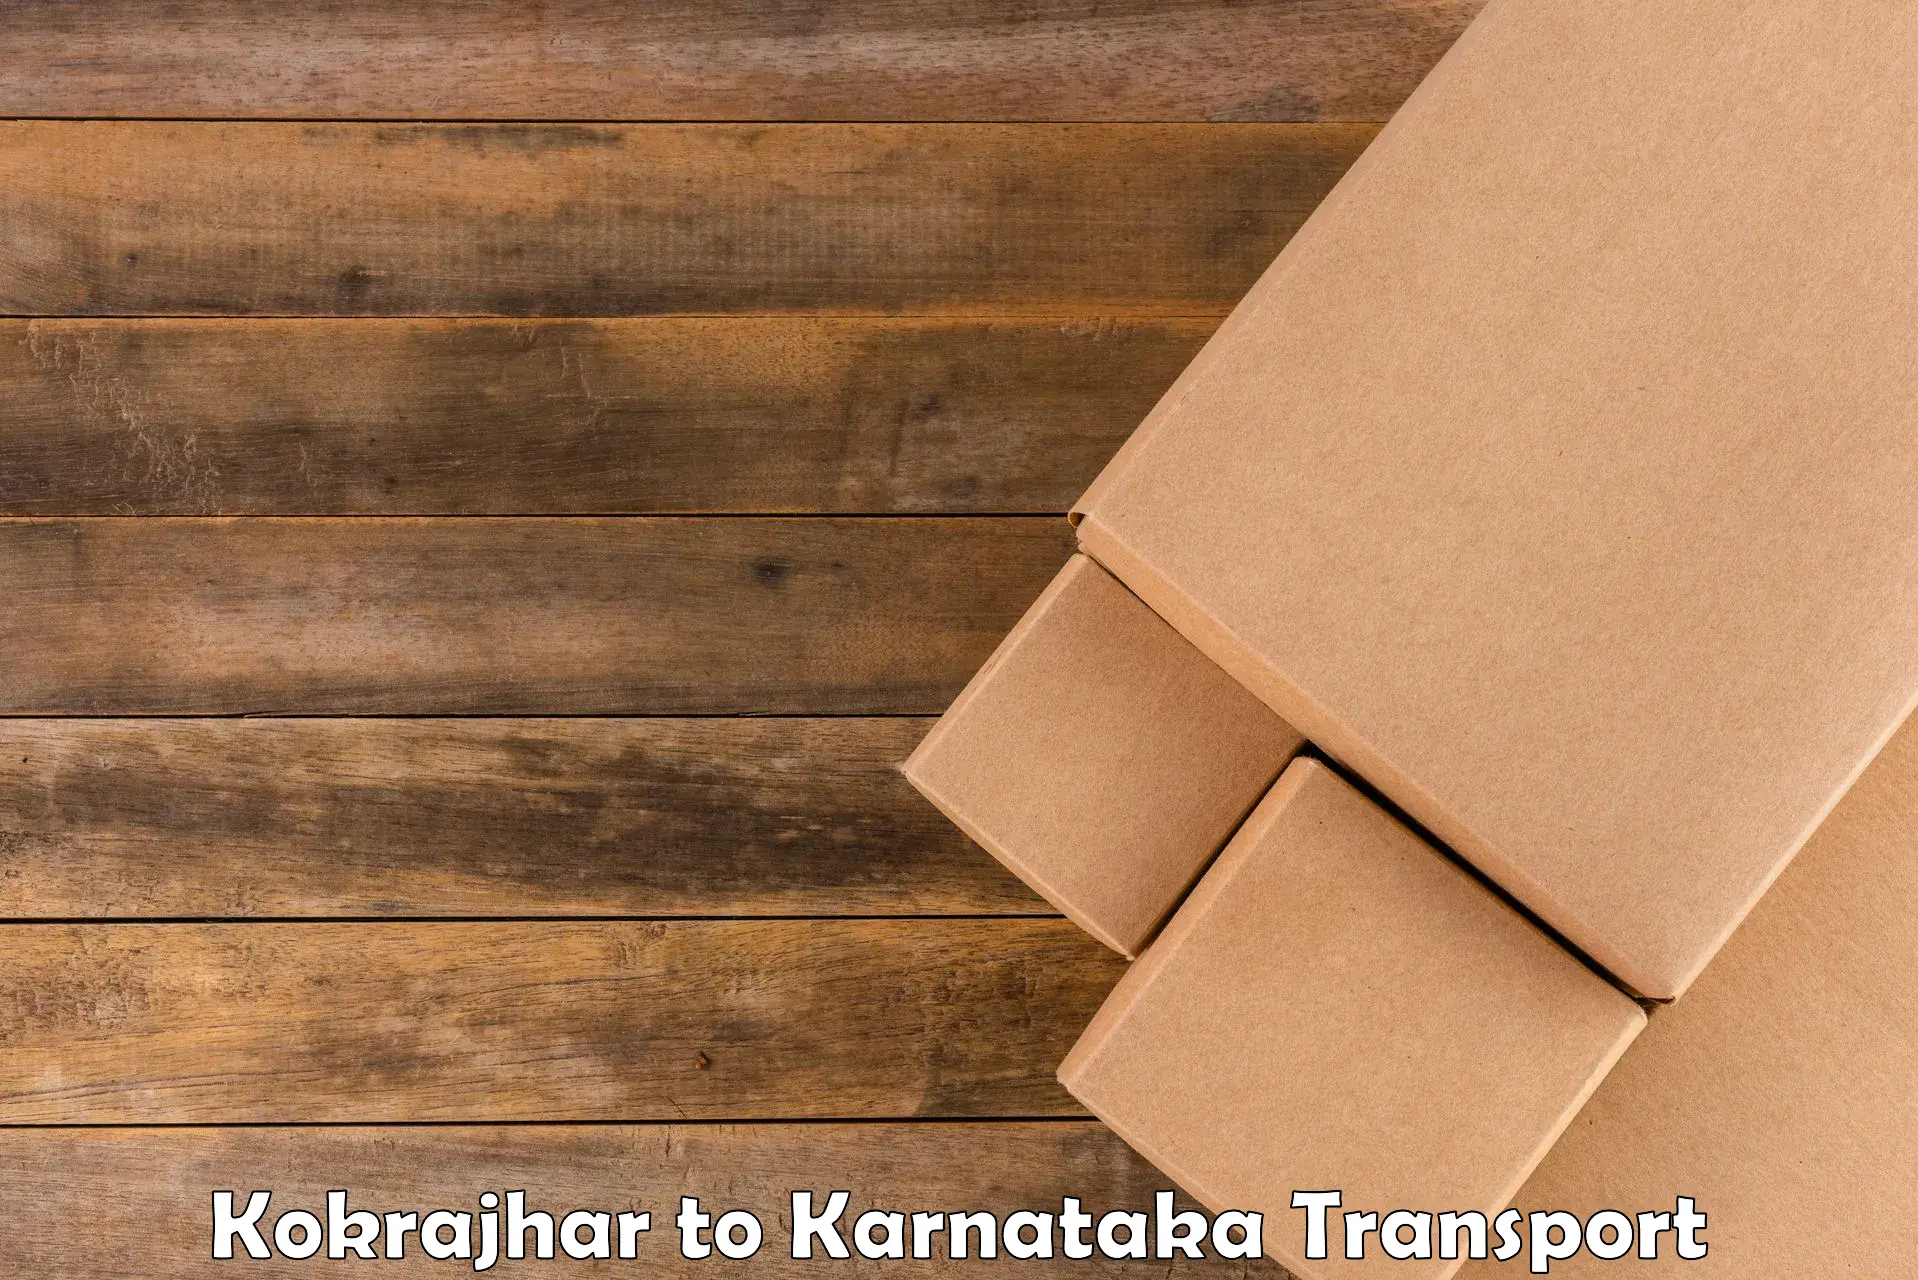 Bike transport service Kokrajhar to Ramanathapura